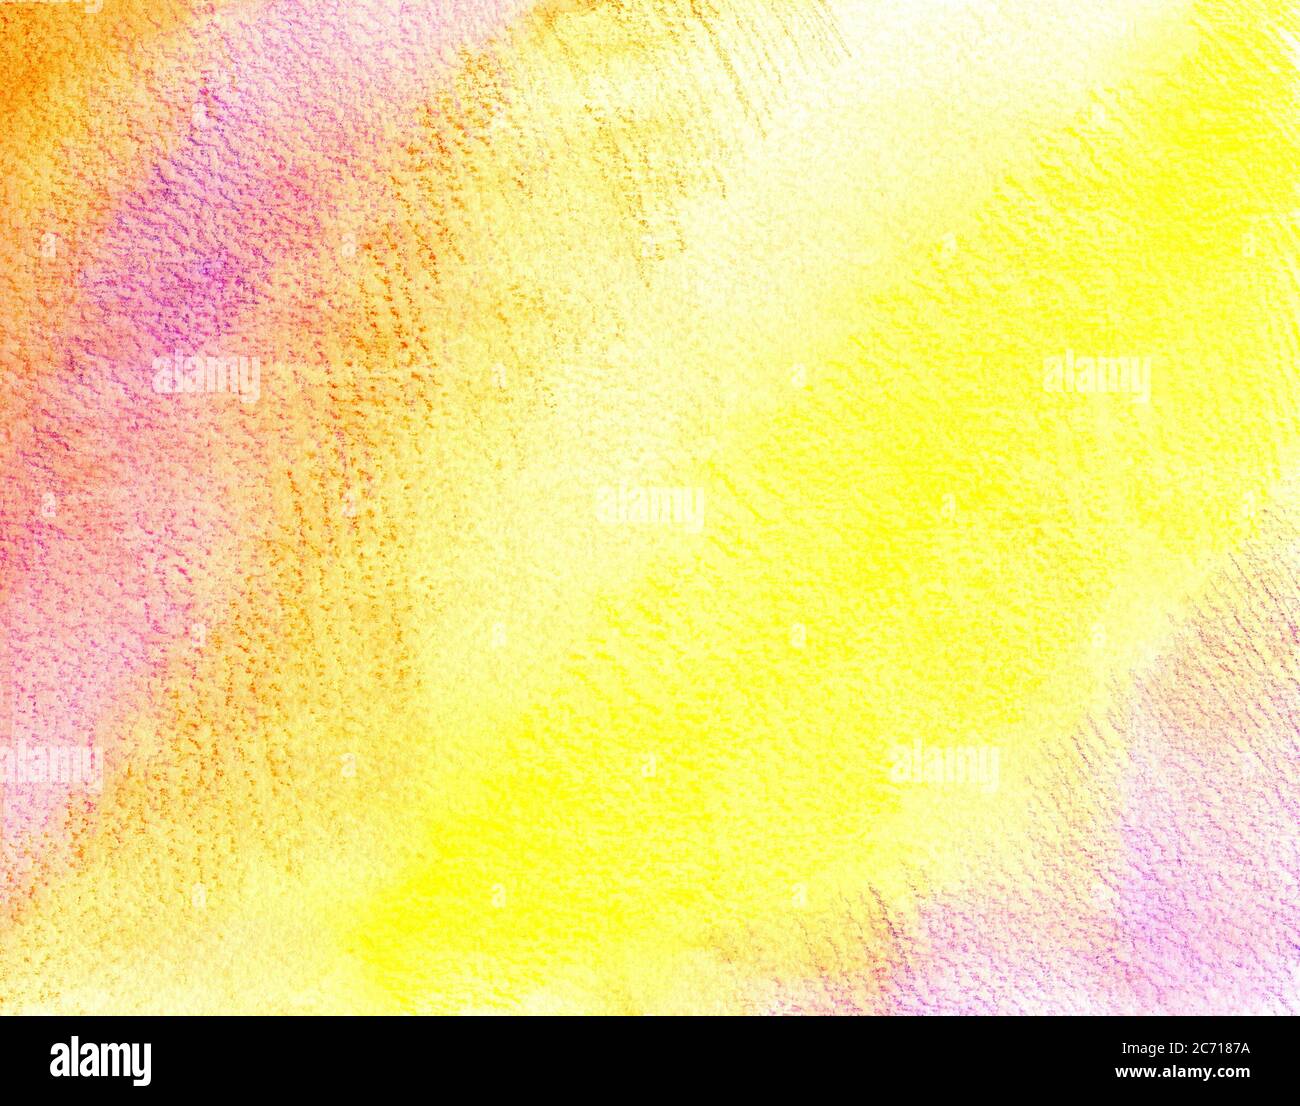 Handgezeichneter gelber, roter, violetter Hintergrund. Texturpapier in Gelb, Orange und Lila mit einem Aquarellstift. Hintergrund für Karten, Collagen, Designs, Titel, Preisschilder, Flyer und so weiter. Stockfoto